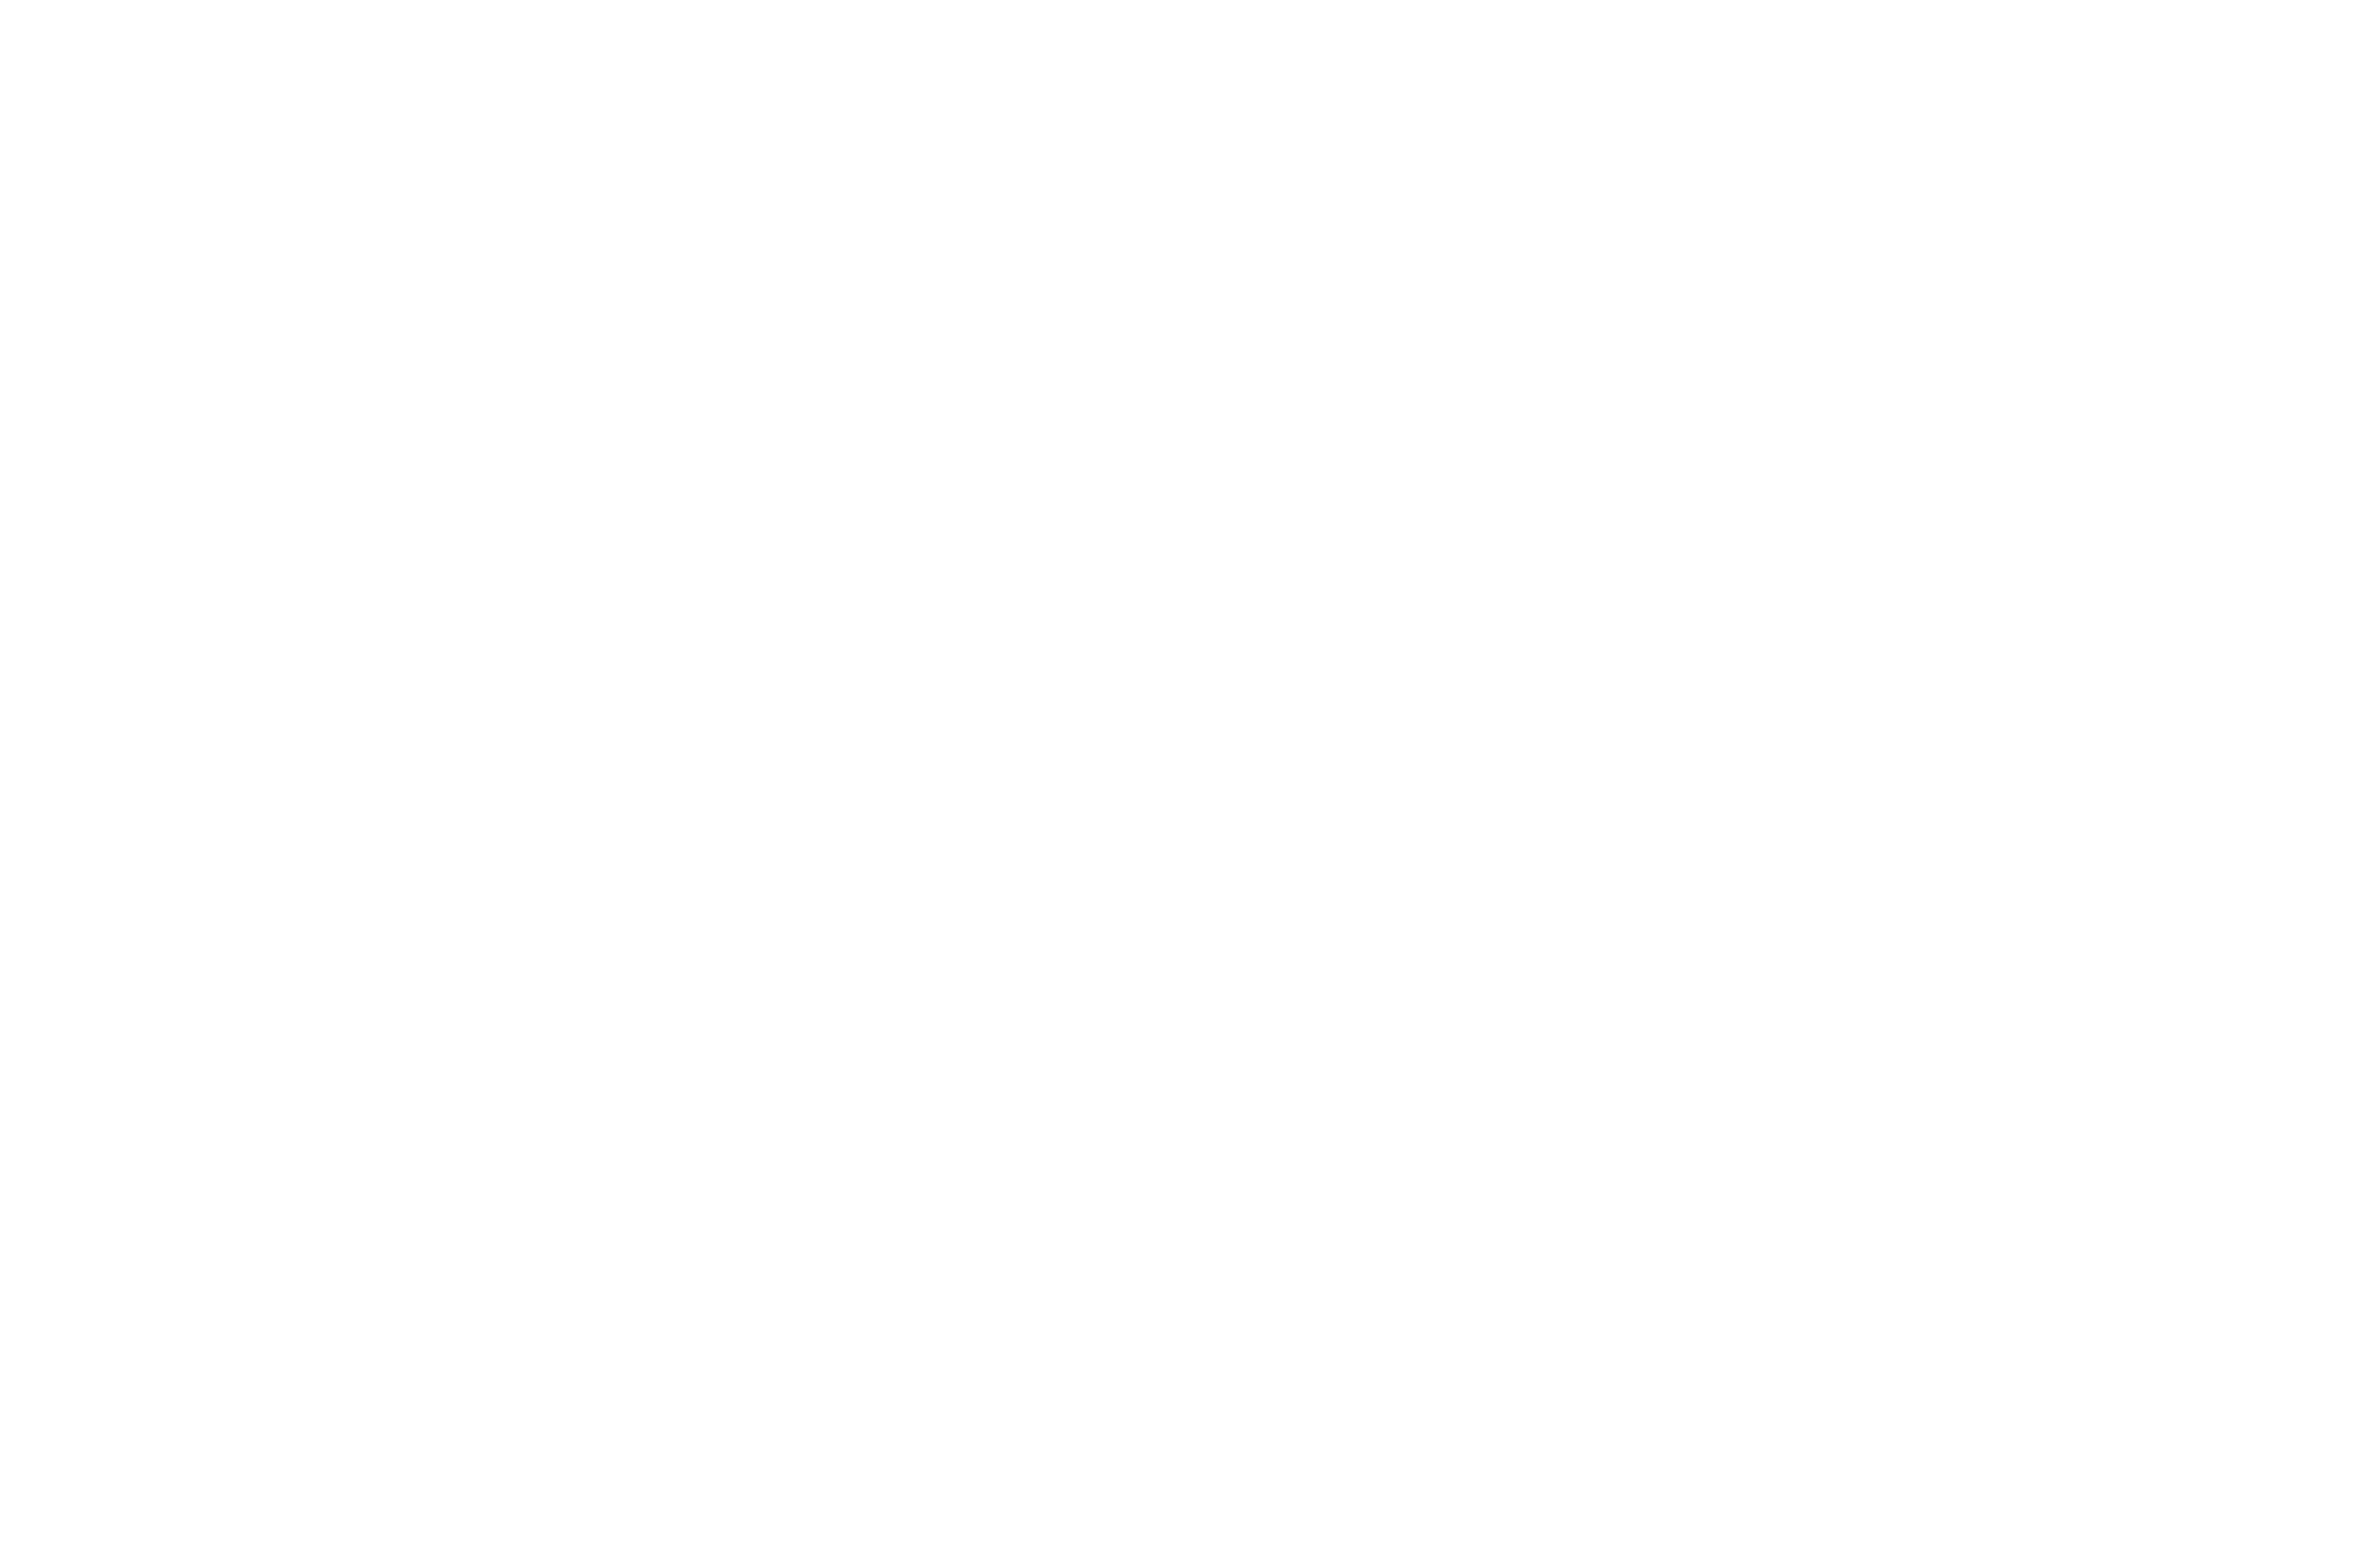 dacaccio.org